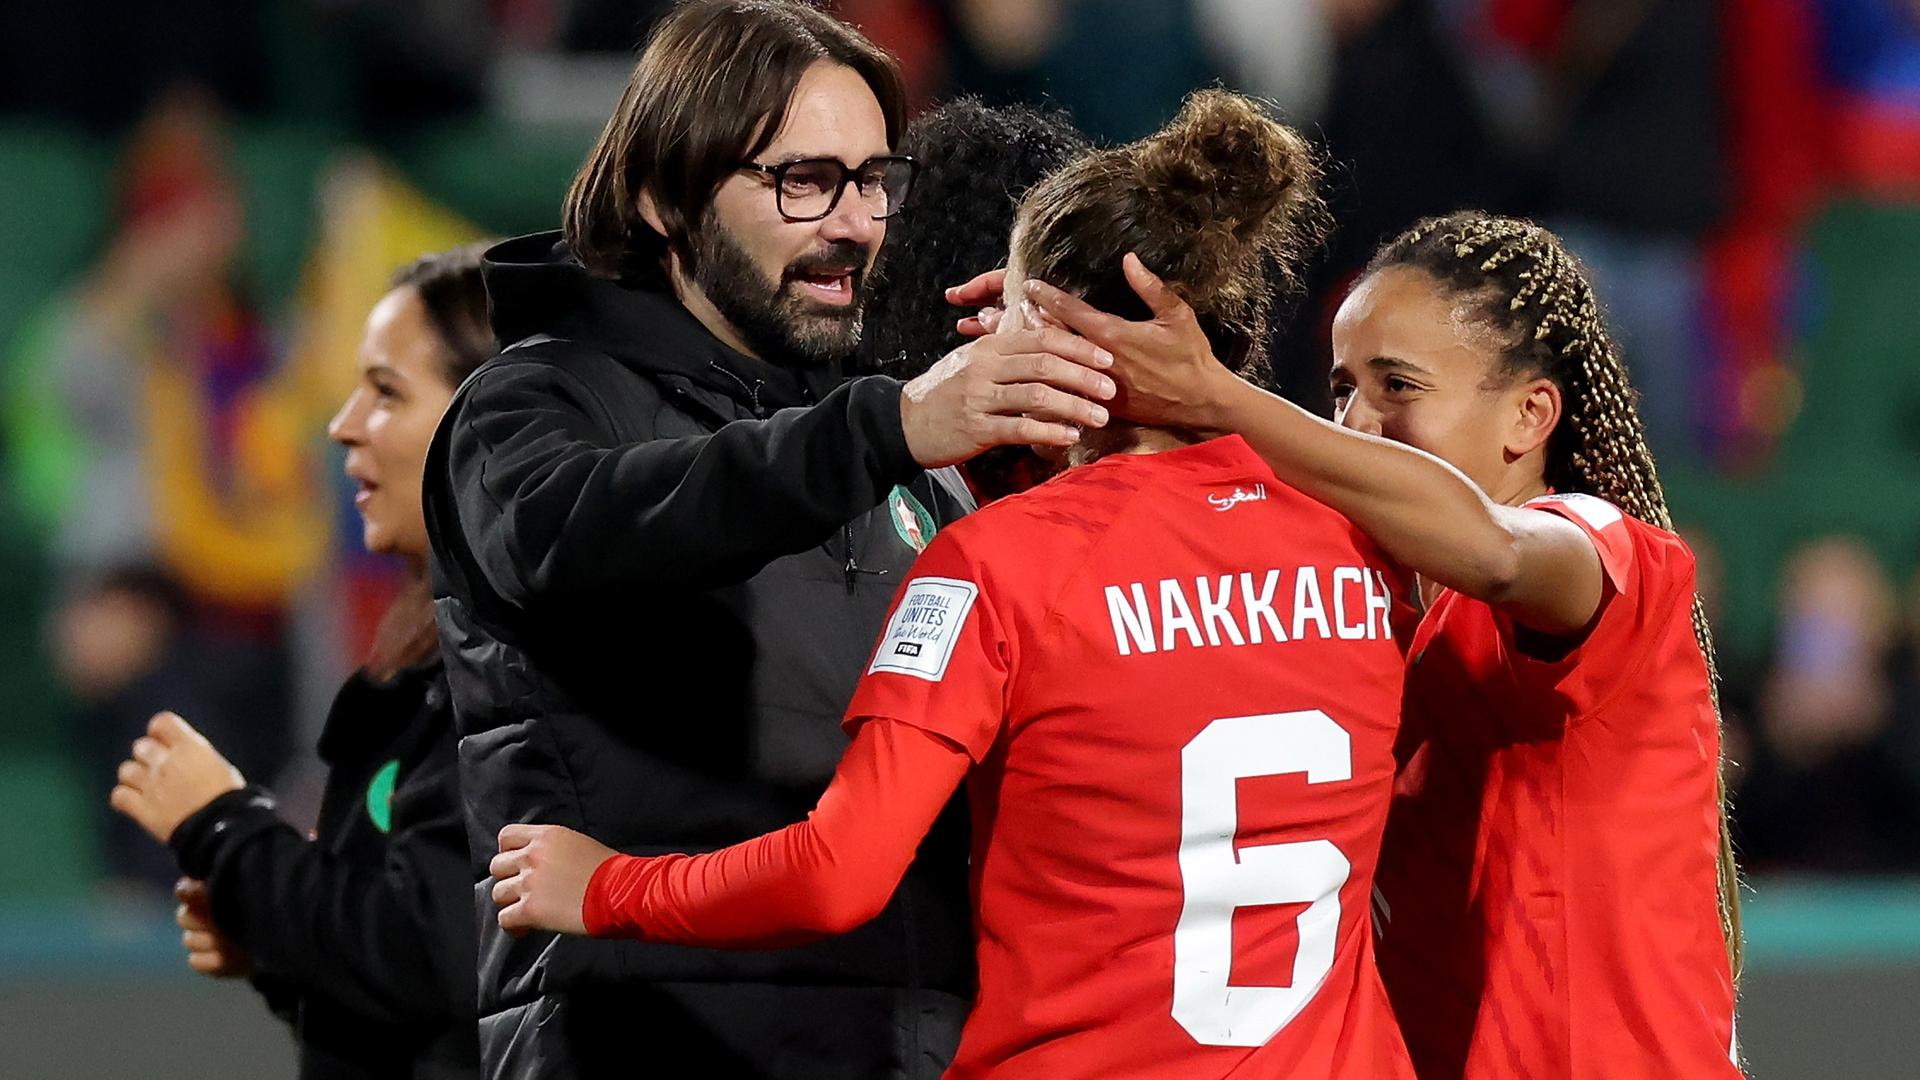 Reynald Pedros, Trainer der marokkanischen Frauen-Fußballnationalmannschaft, beglückwünscht Spielerin Elodie Nakkach nach dem Sieg bei der WM 2023 gegen Kolumbien.